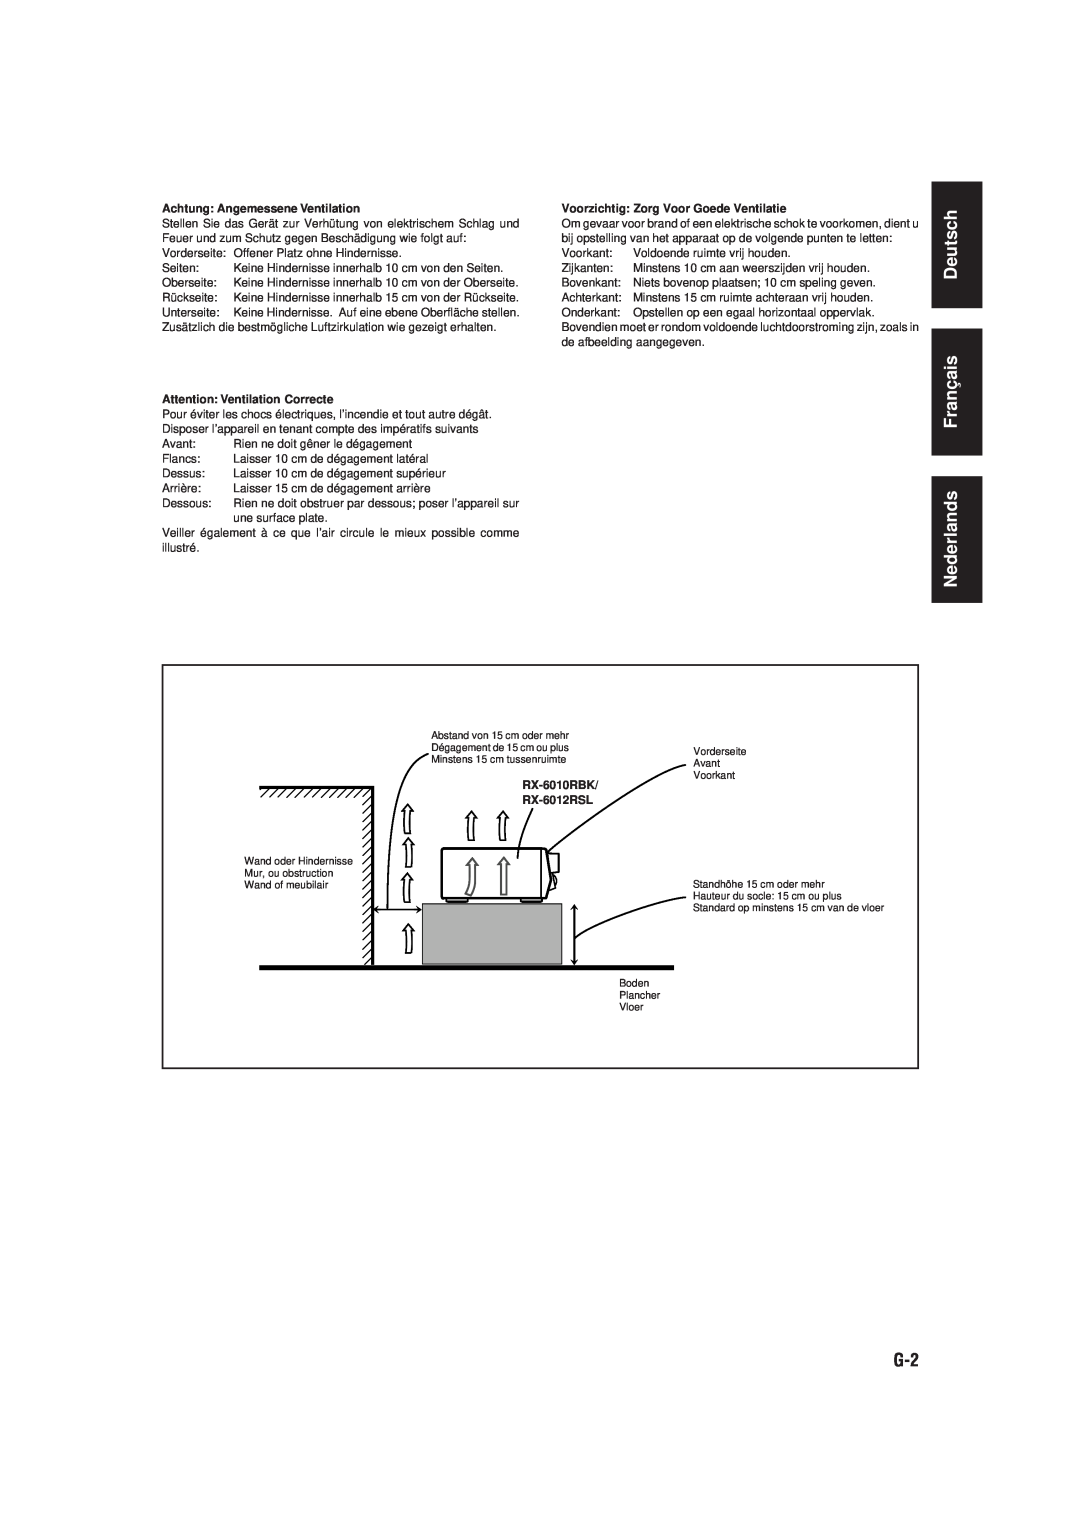 JVC RX-6010RBK manual Deutsch Français Nederlands, Achtung Angemessene Ventilation, Attention Ventilation Correcte 